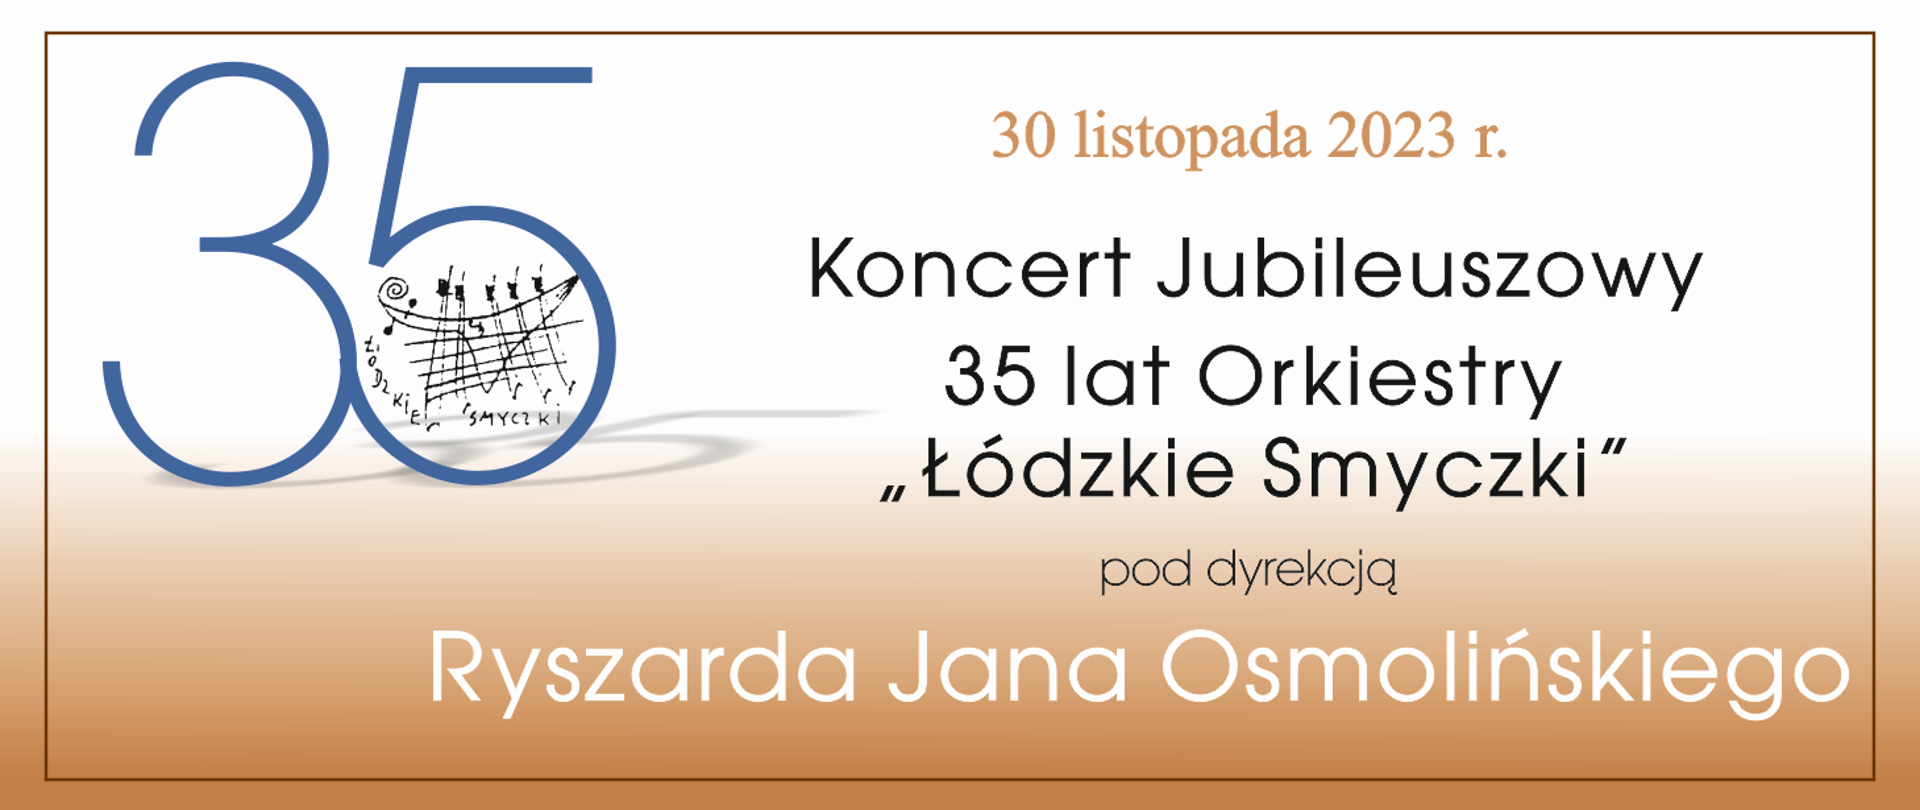 Infografika zapraszająca na koncert jubileuszowy "Łódzkie Smyczki" pod dyrekcją Ryszarda Jana Osmolińskiego. Na beżowym tle tekst zaproszenia oraz data 30 listopada 2023 roku.